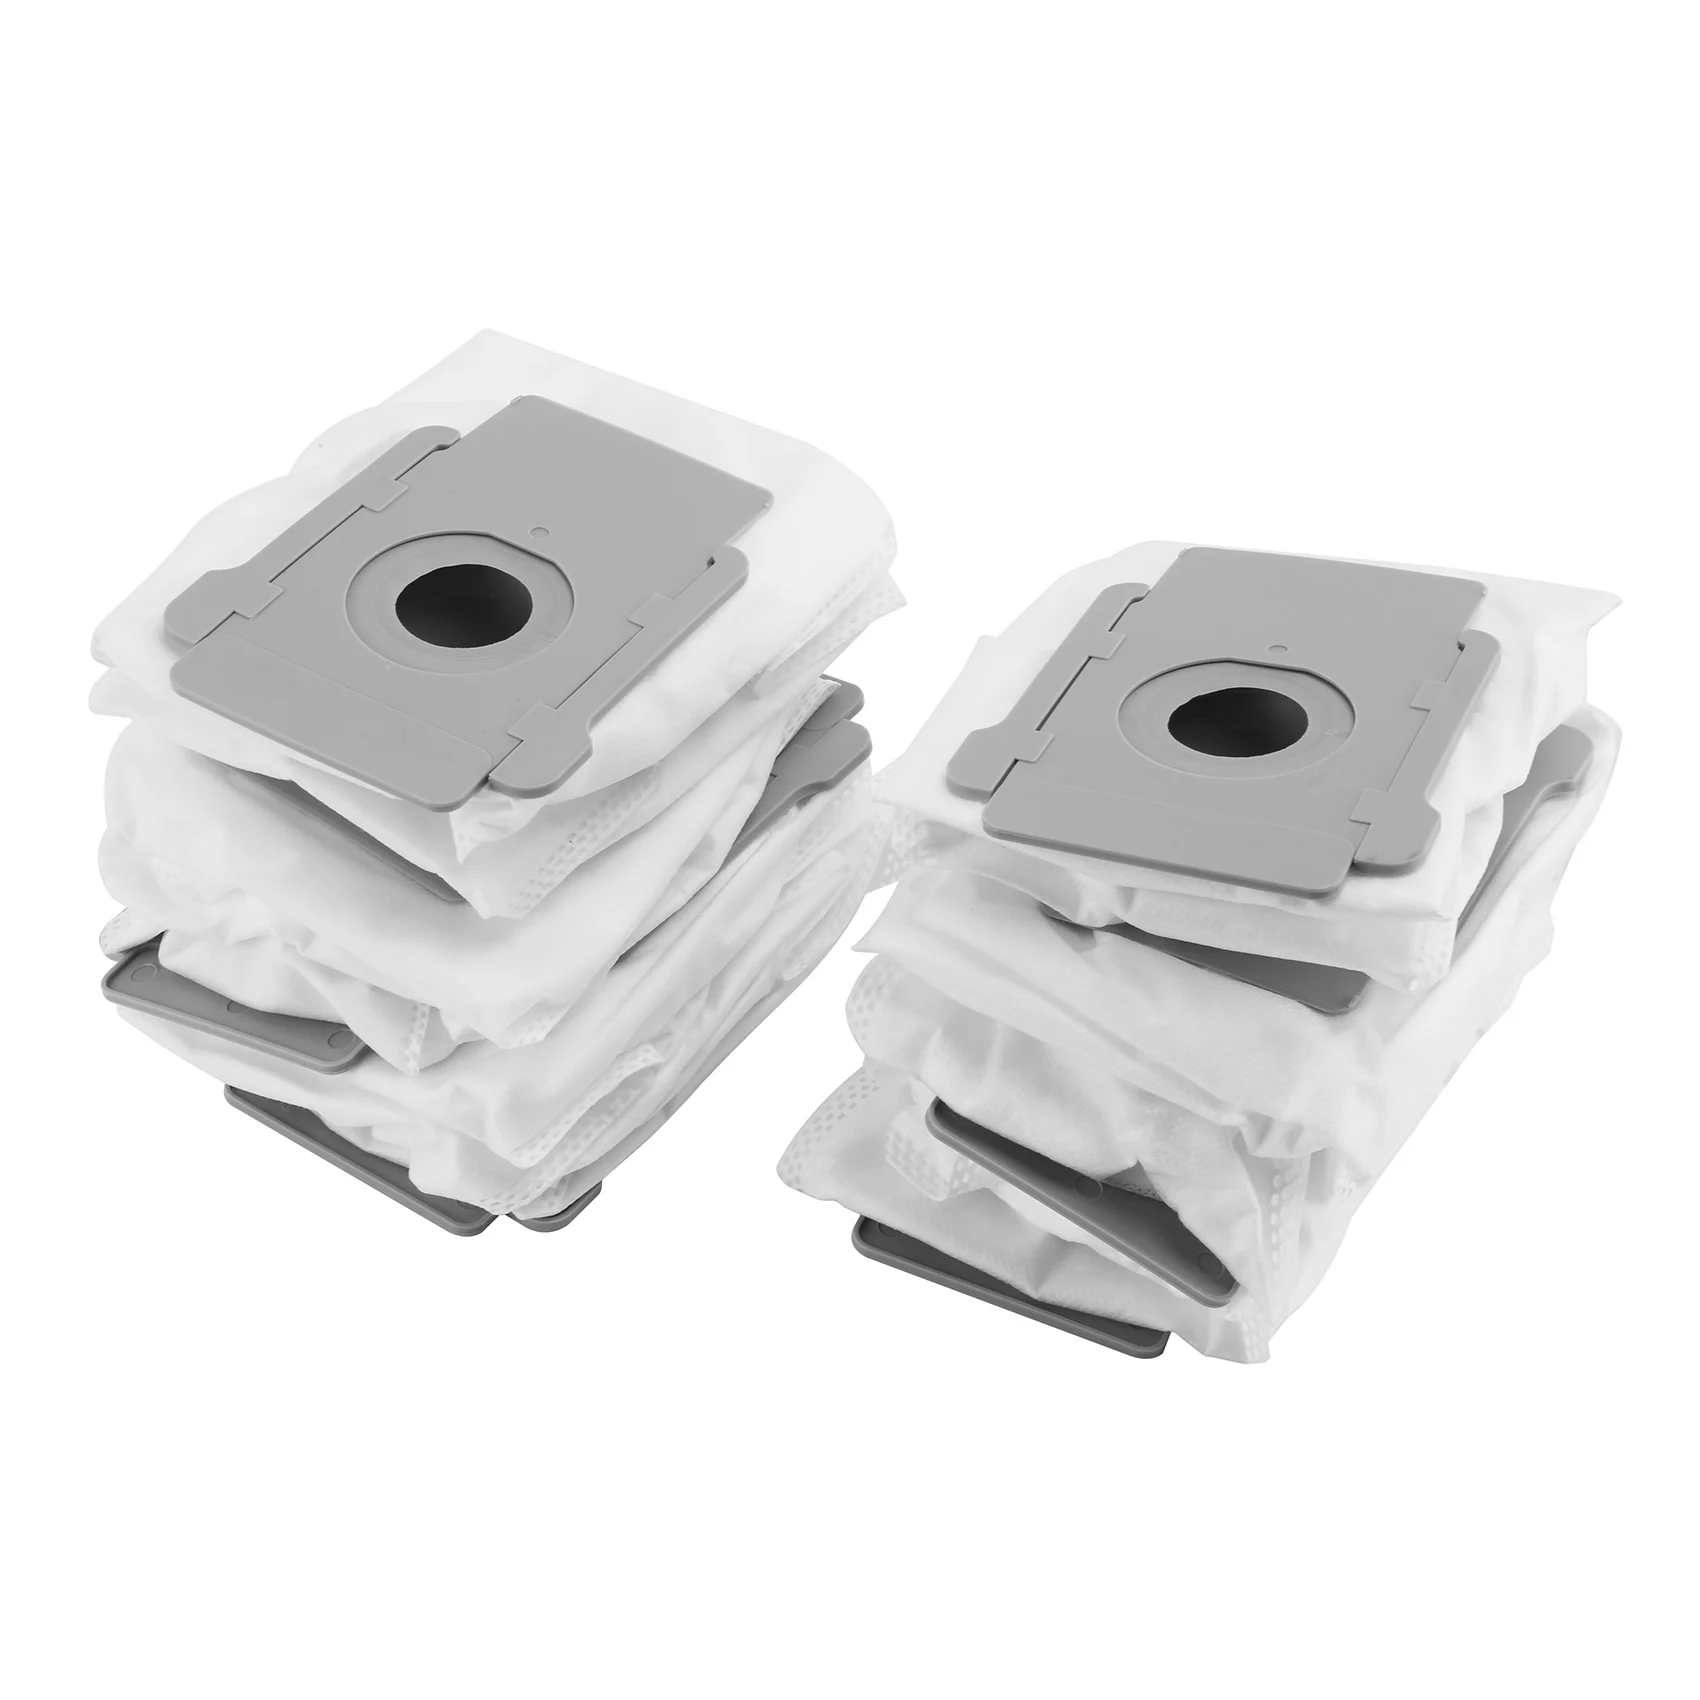 10 Упаковок вакуумных пакетов для iRobot Roomba I7 I7 + /Plus S9 + (9550) Автоматические пакеты для удаления грязи Clean Base